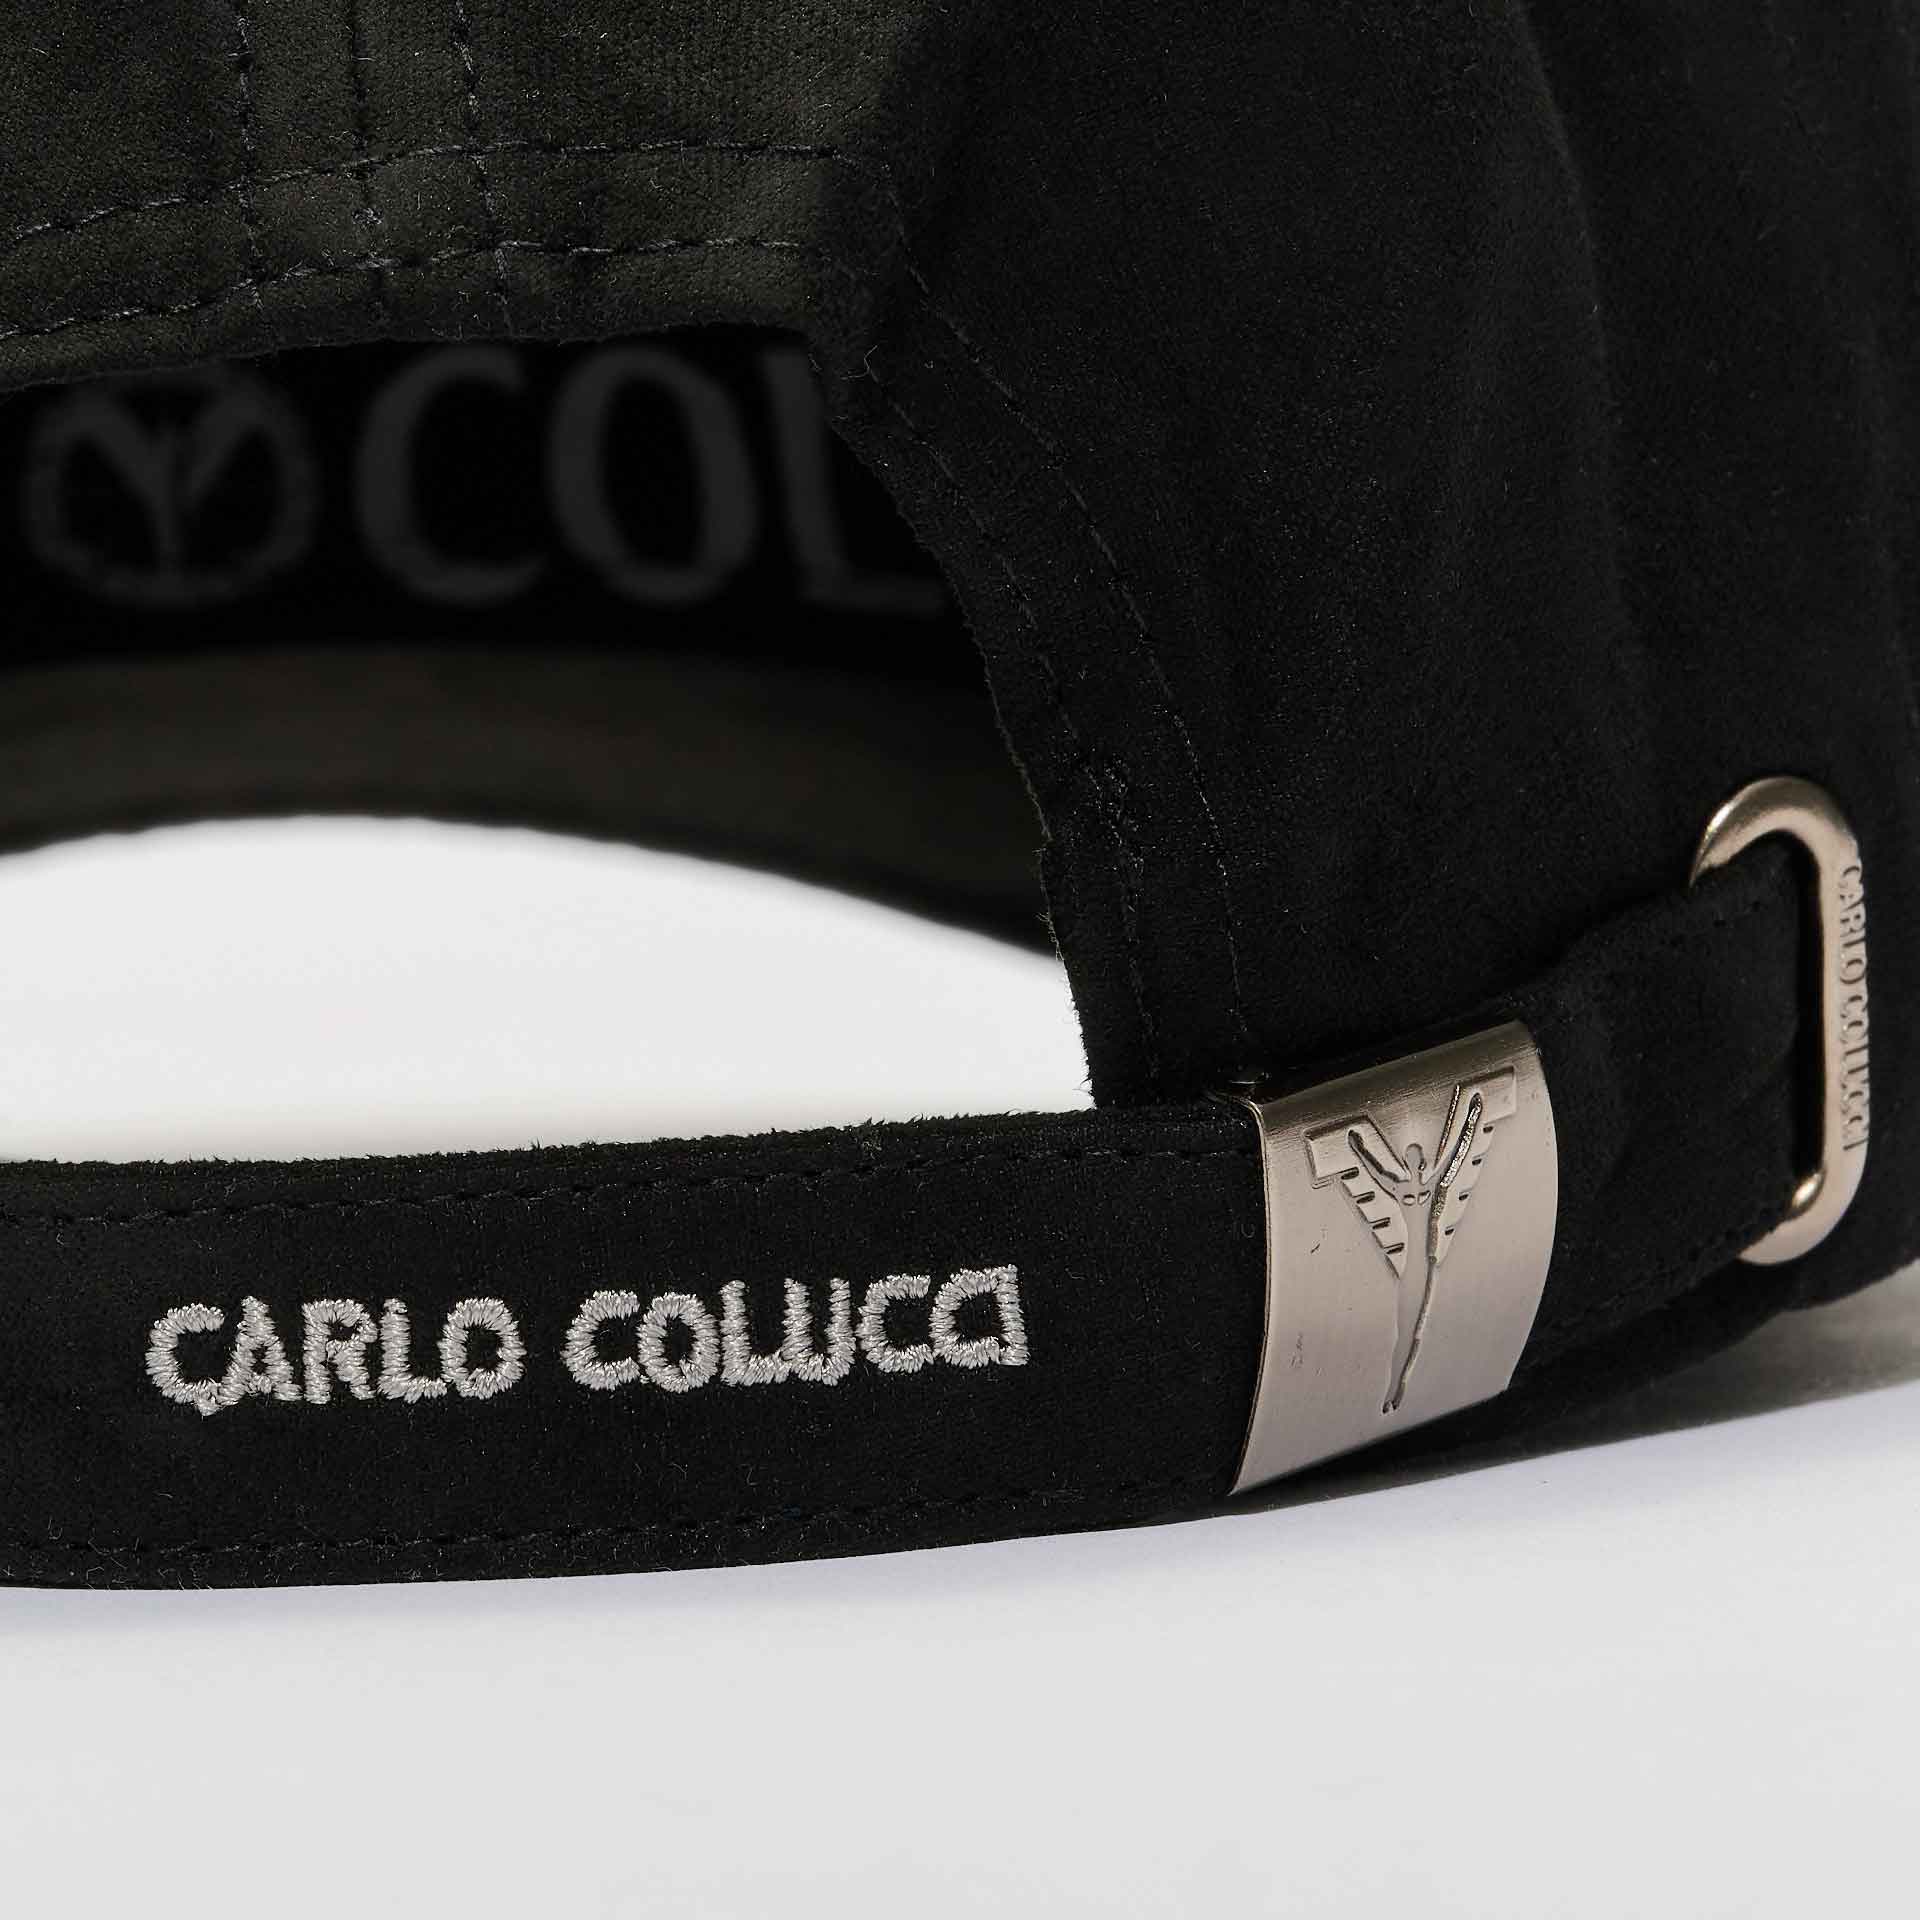 Carlo Colucci Velour Cap Black